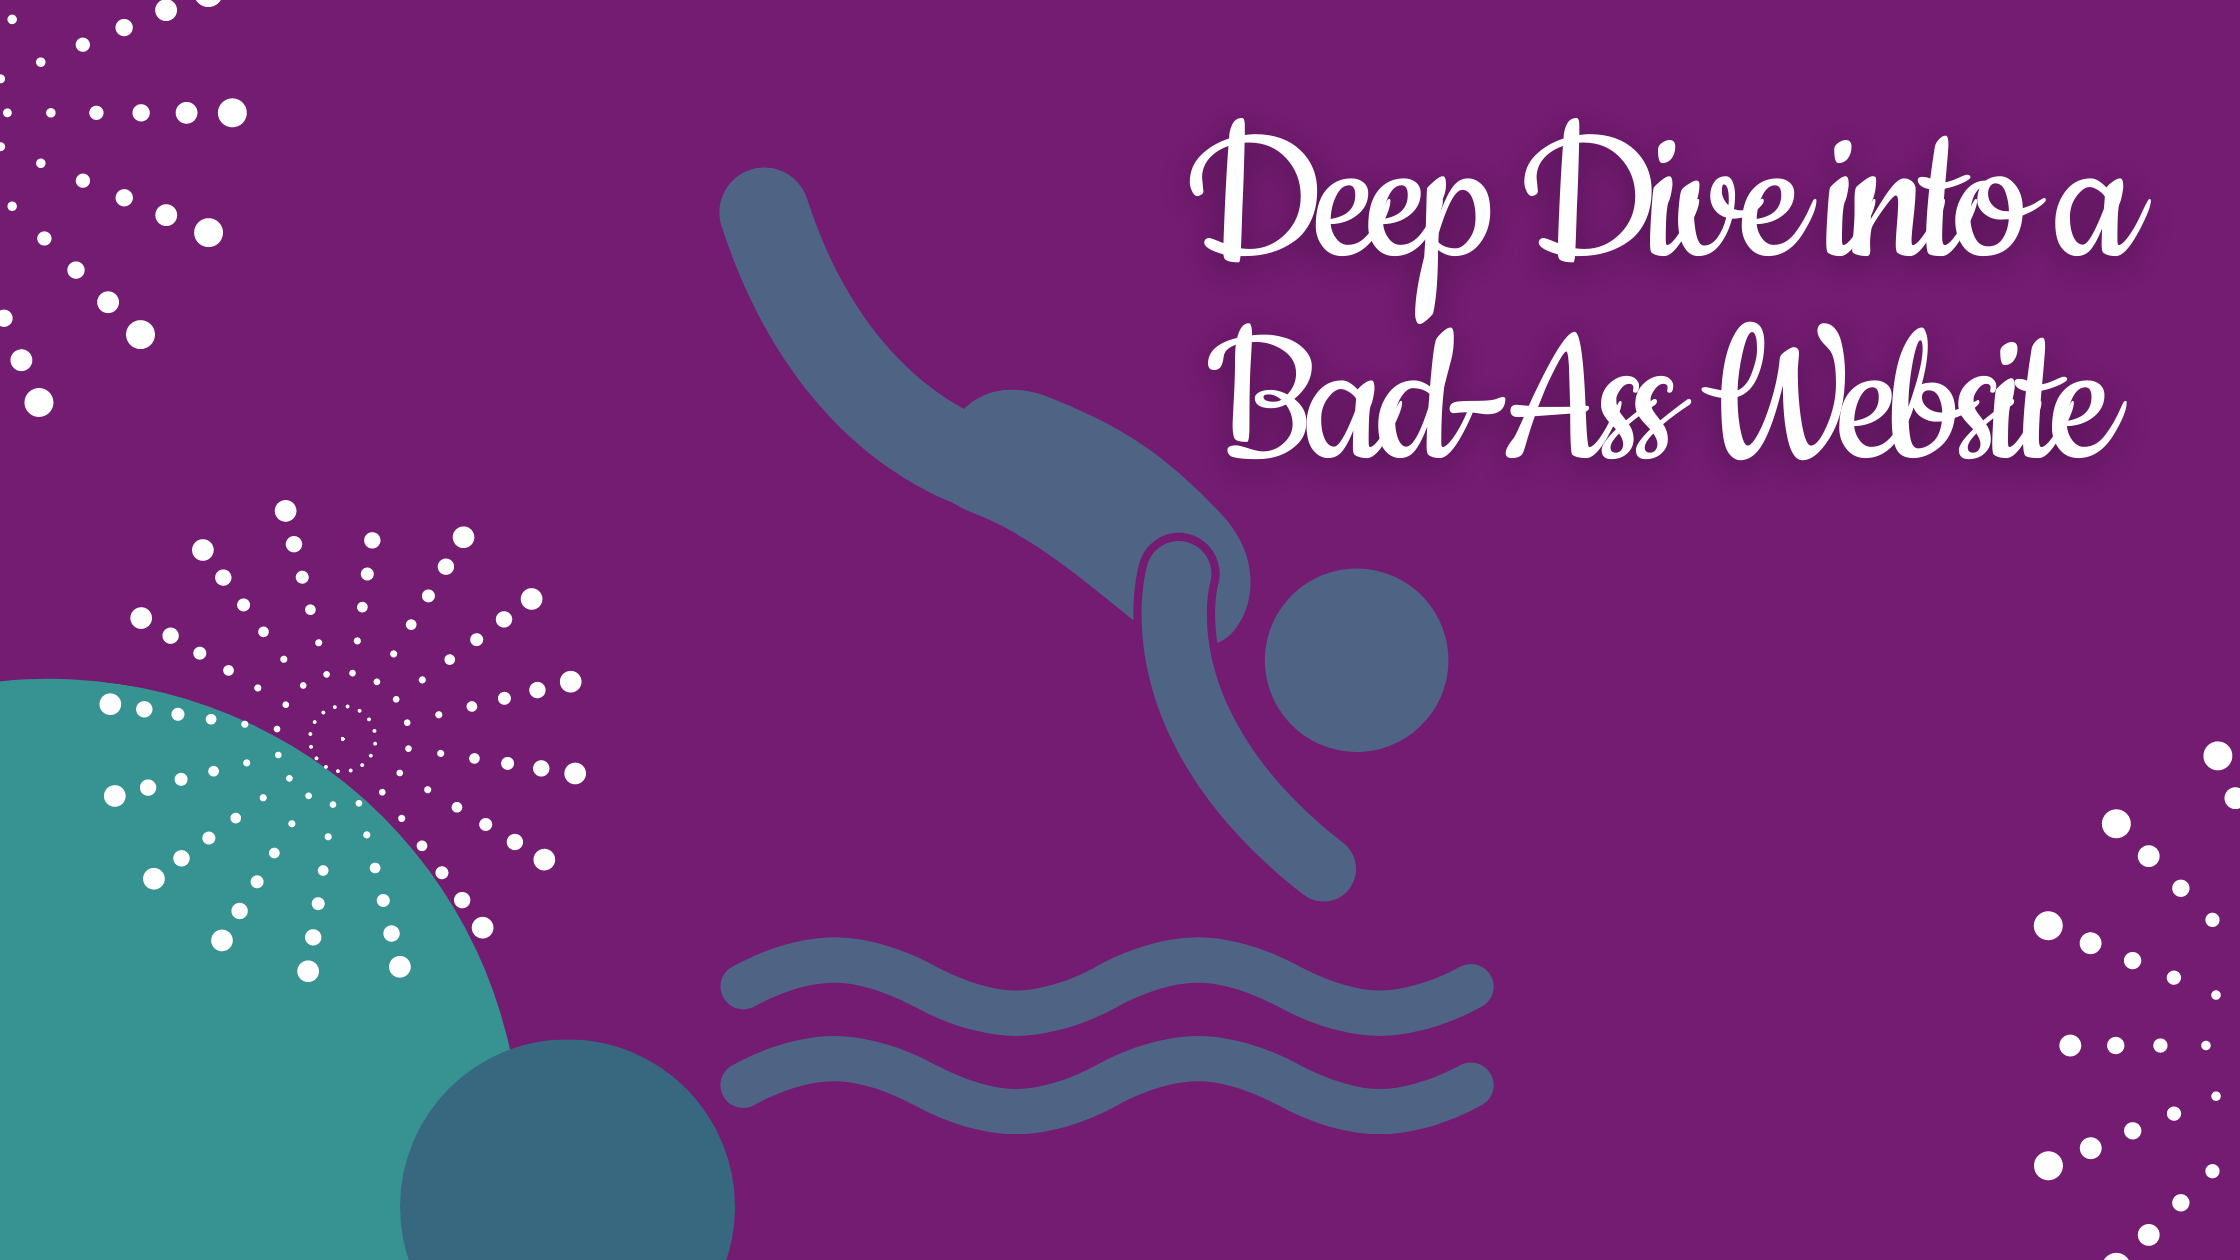 Deep-Dive Into a Bad-A$$ Website